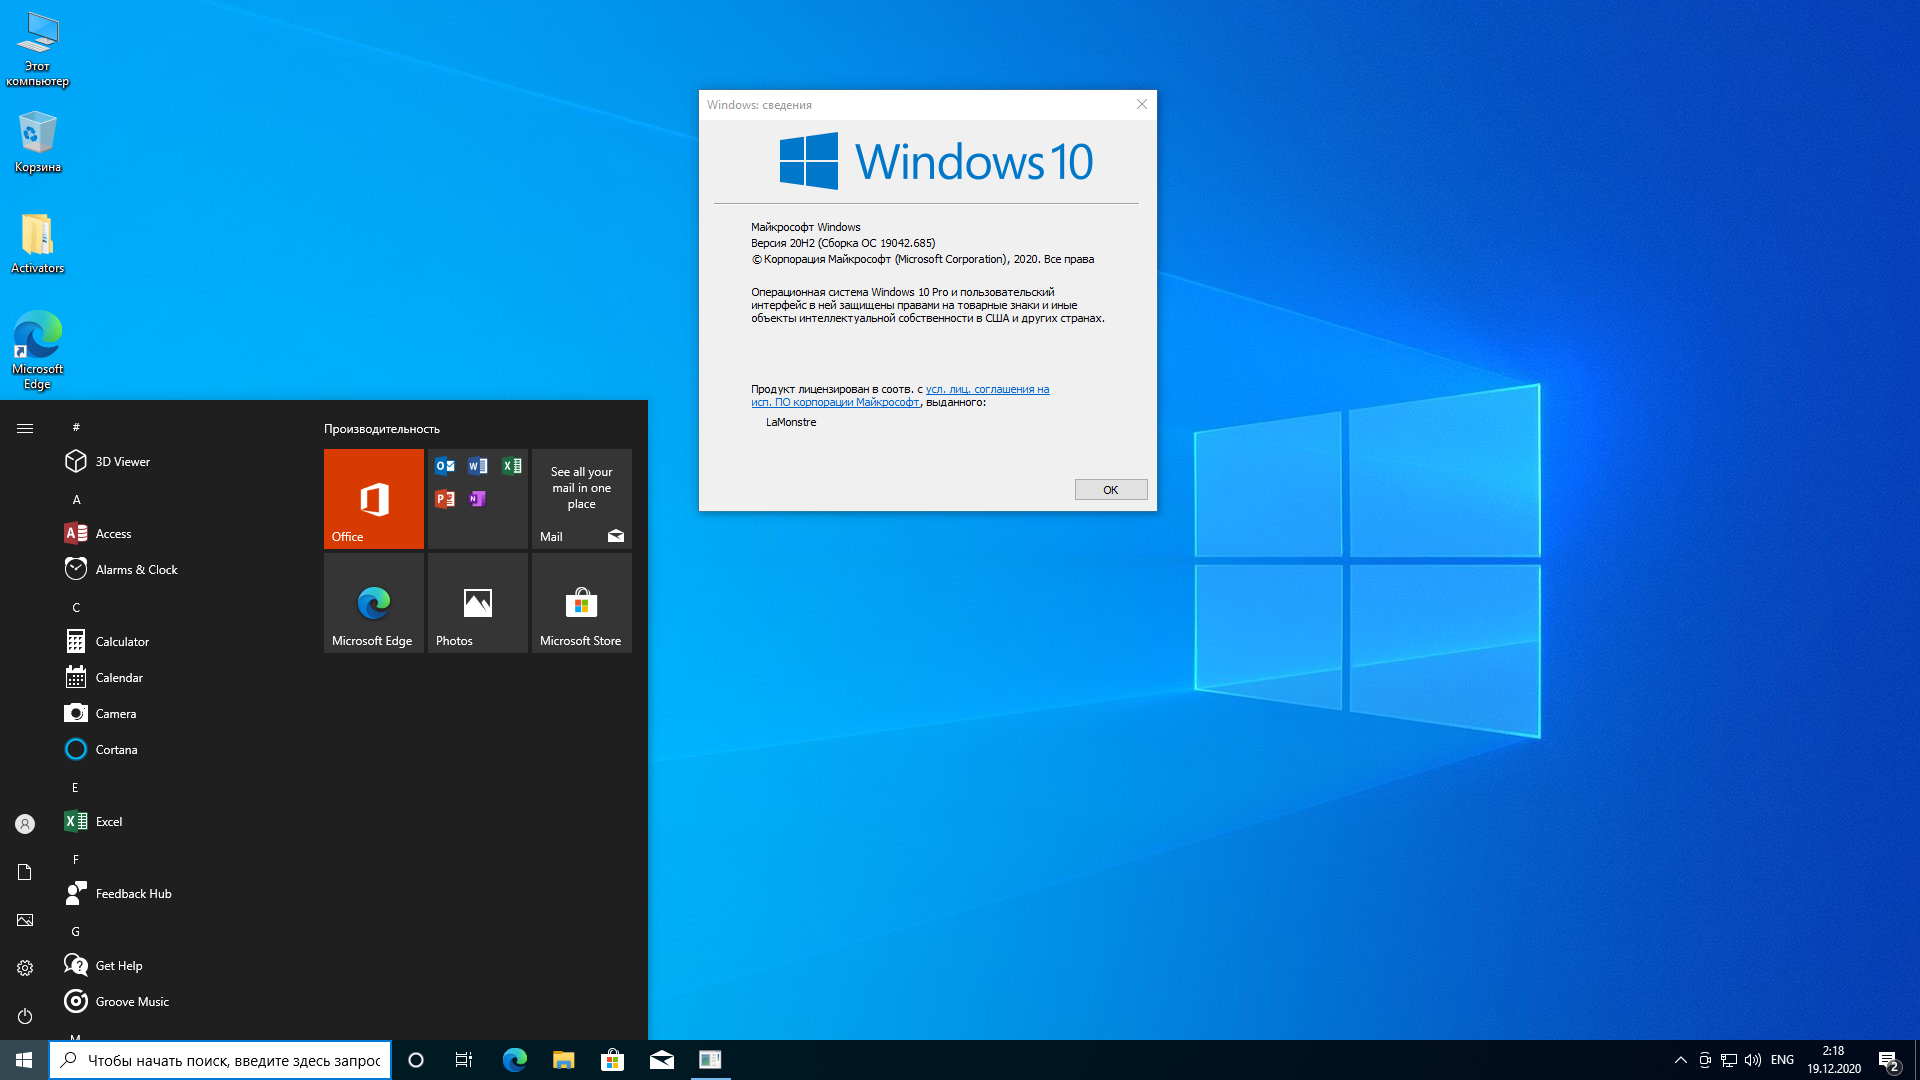 windows 10 pro x64 activated torrent download